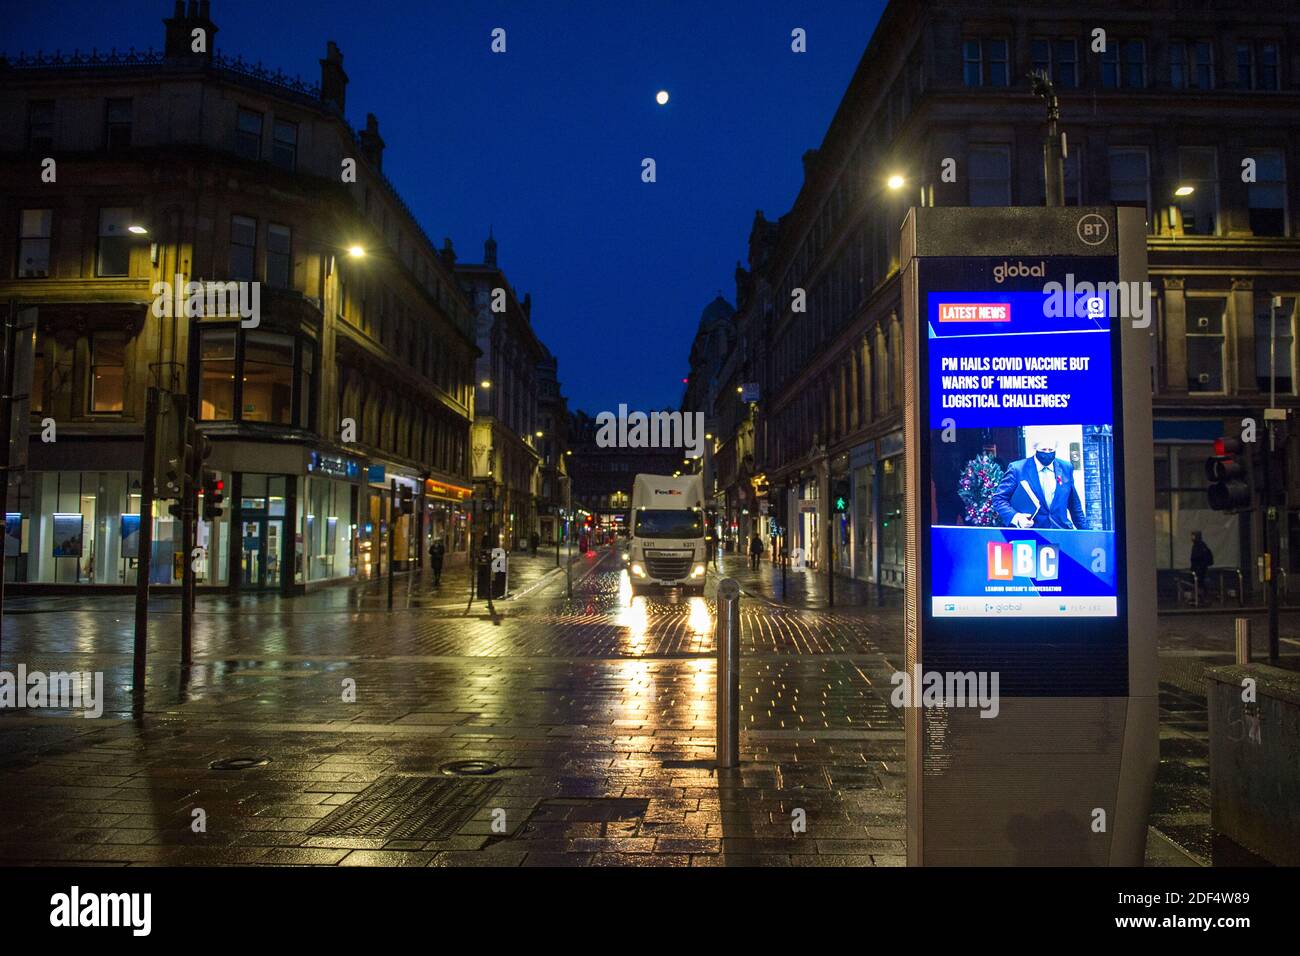 Glasgow, Schottland, Großbritannien. Dezember 2020. Im Bild: Gordon Street mit einer Live-Nachricht von LBC, die darauf hinweist: „der PM BEGRÜSST DEN COVID-IMPFSTOFF, WARNT ABER VOR ‘IMMENSEN LOGISTISCHEN HERAUSFORDERUNGEN'“-Szenen im Stadtzentrum von Glasgow, zu einer Zeit, in der Pendler viel Zeit haben sollten. Der erste Schnee ist über Nacht gefallen das Stadtzentrum ist freier Ionenschnee), aber dies hat einen Einfluss auf die Reise gemacht das Stadtzentrum sehr ruhig und leer. Quelle: Colin Fisher/Alamy Live News Stockfoto